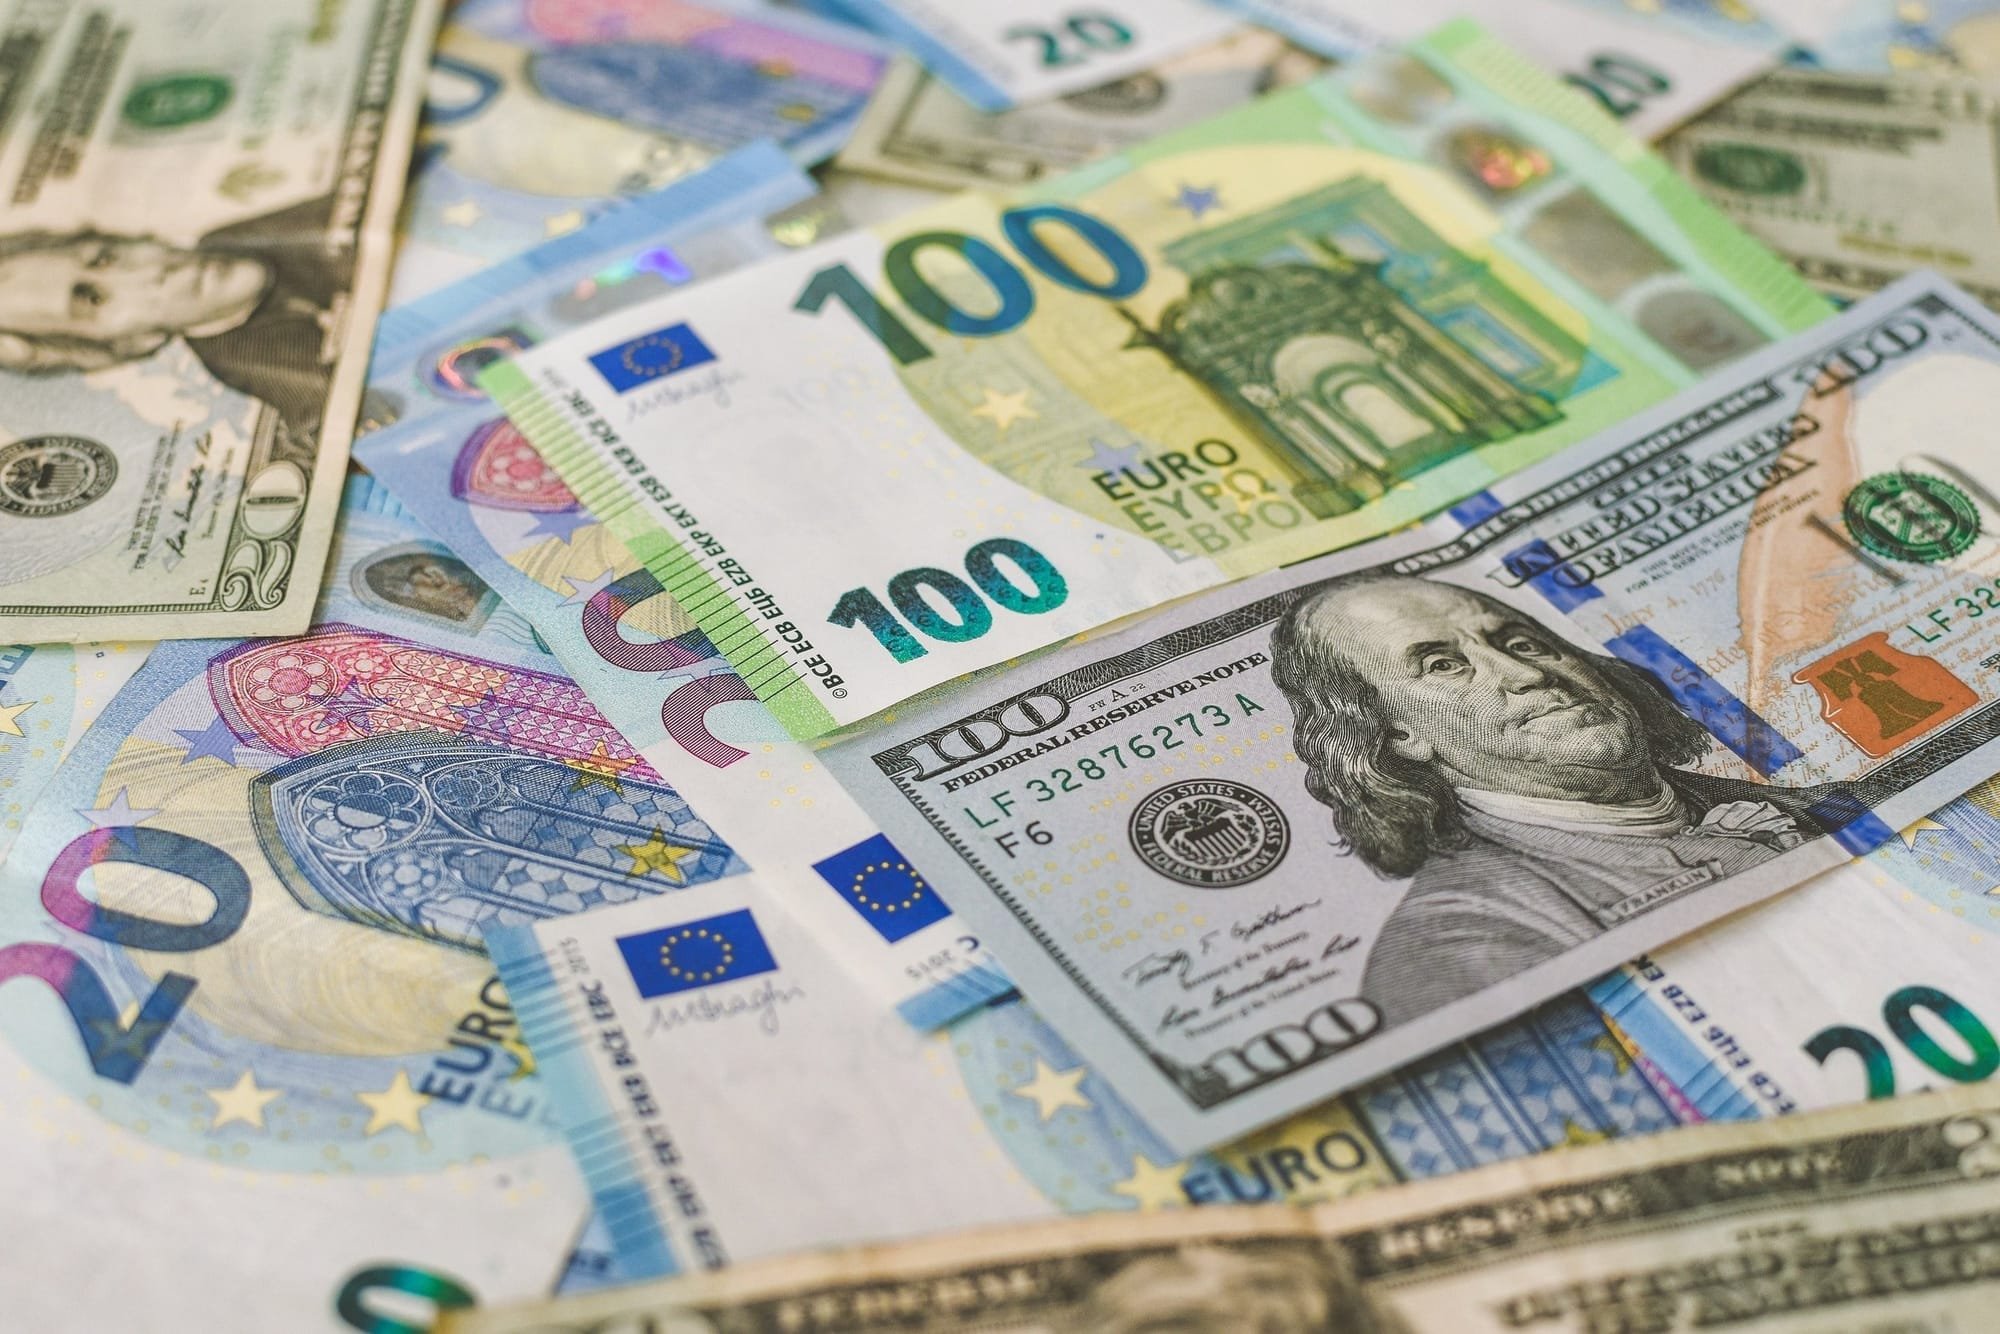 Fonds WCA International ist insolvent, 6000 Tschechen zittern um ihr Geld